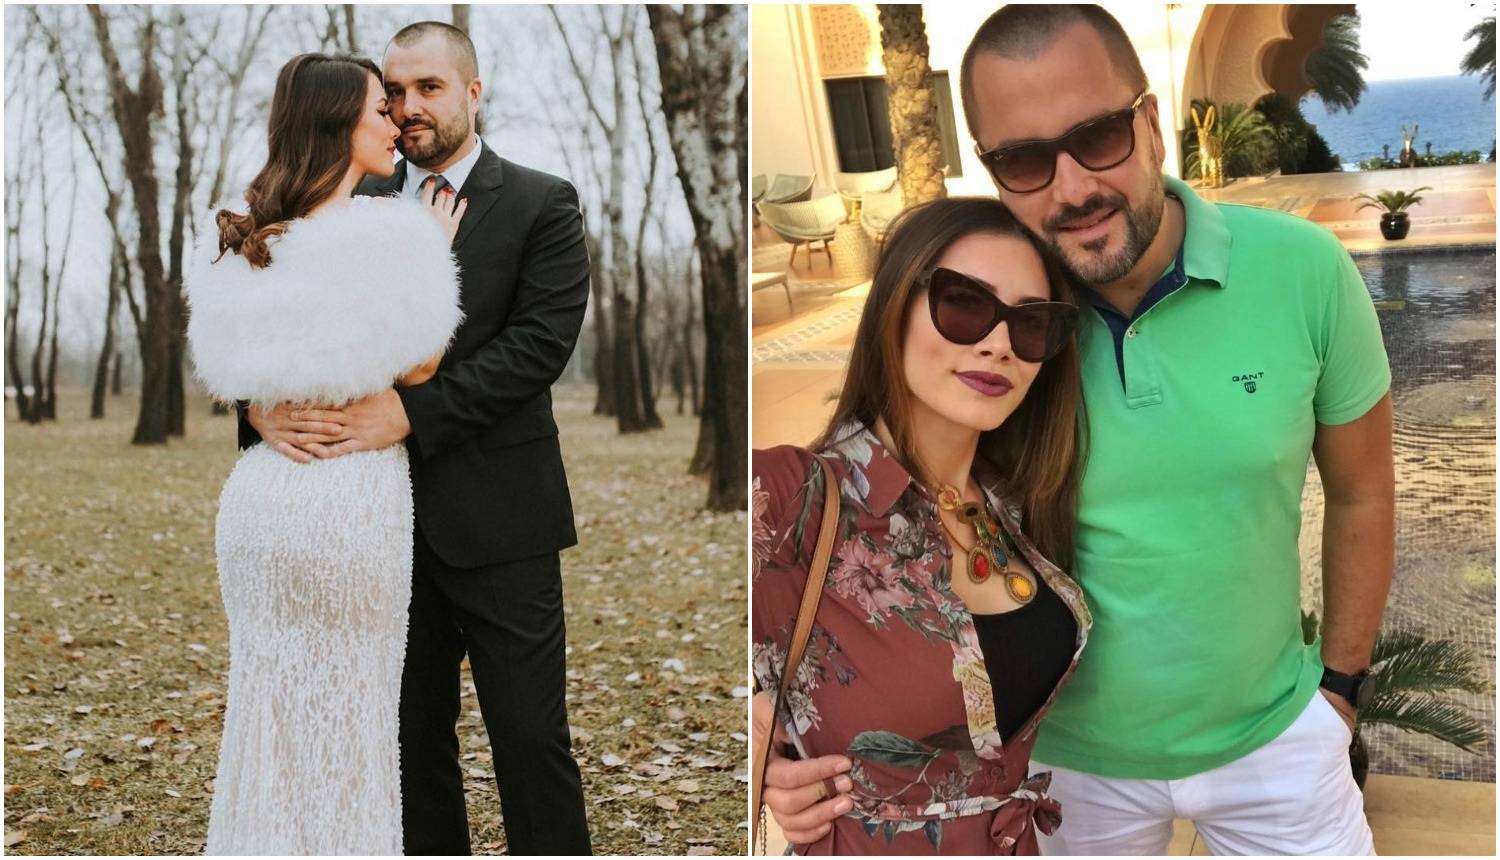 Jelena Glišić potajno se udala: 'Željeli smo intimnu proslavu'